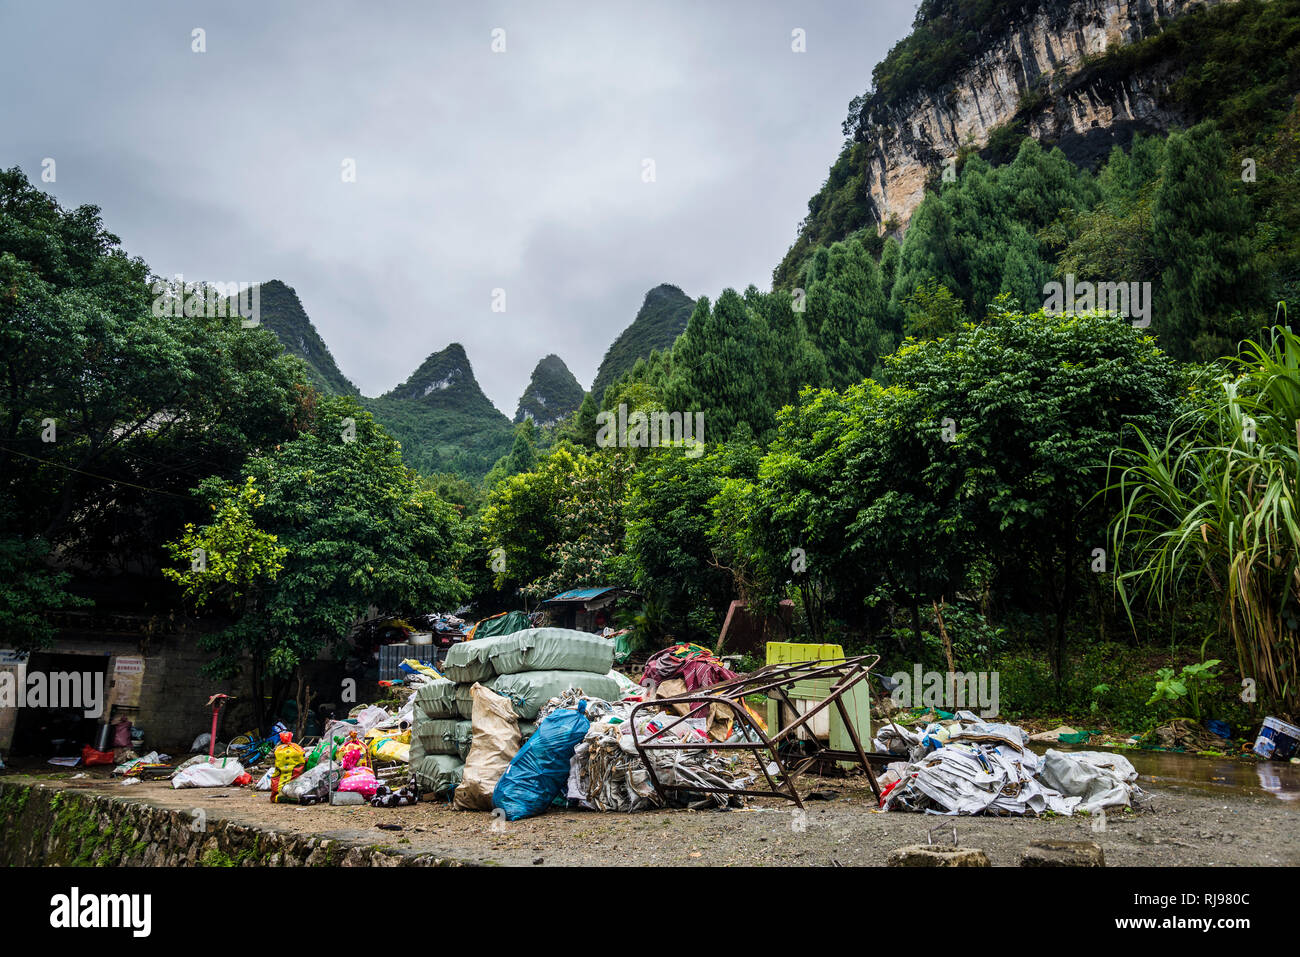 Des tas de détritus au pied des célèbres pics calcaires, Xingping, région de Guilin, province du Guangxi, Chine Banque D'Images